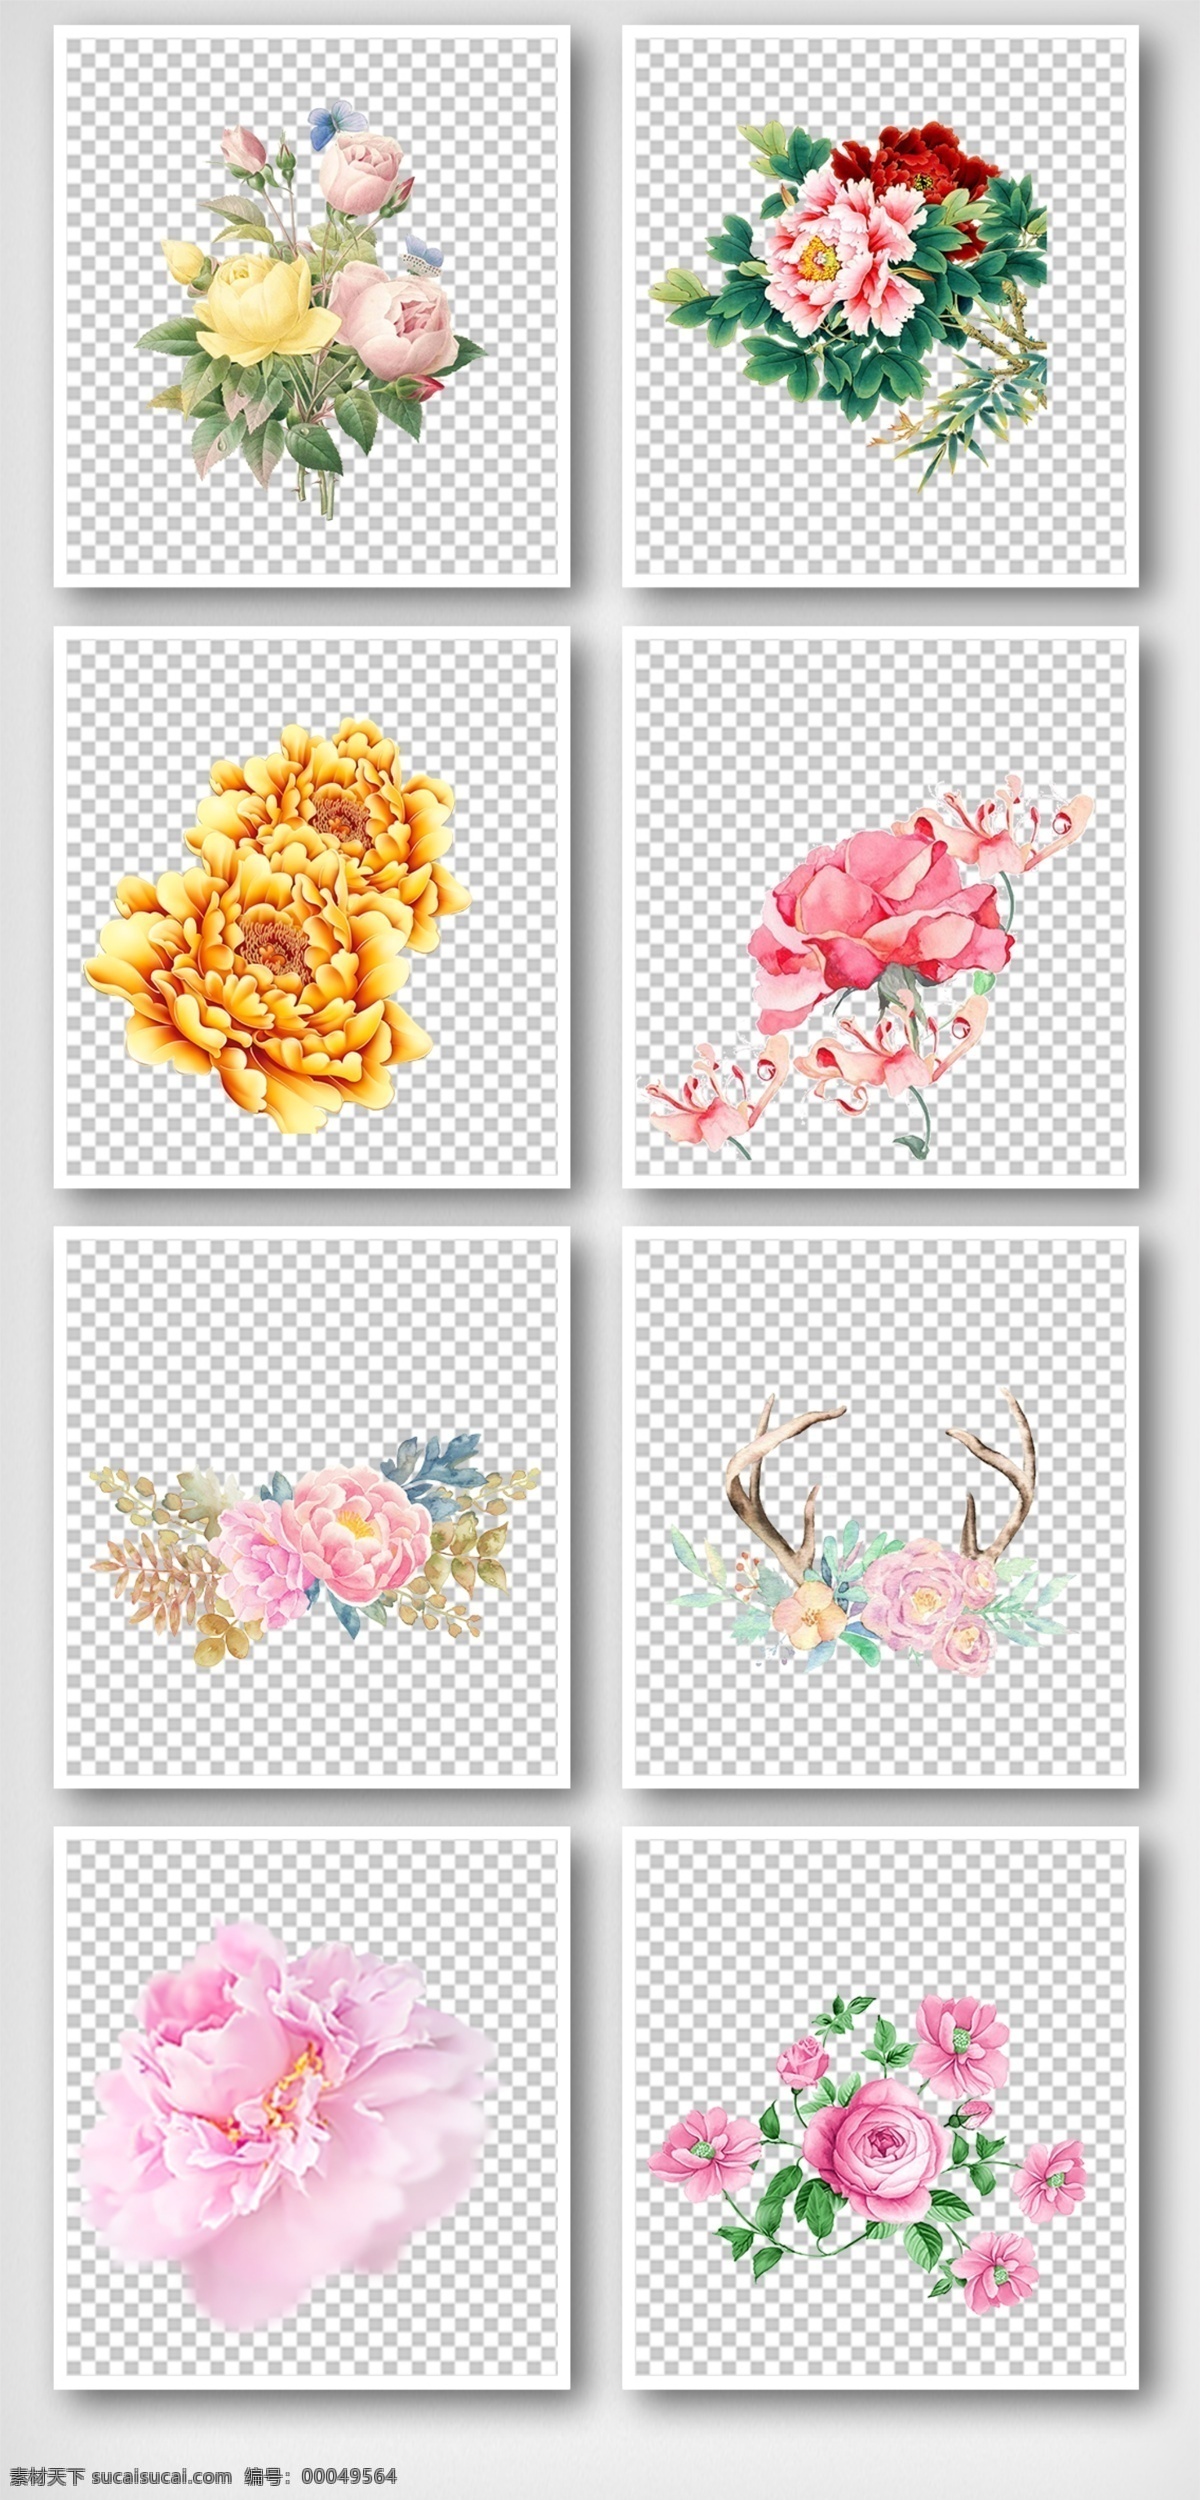 手绘牡丹 花卉 花朵 服装设计 面料花 底纹花 匹布印花 数码印花 几何花 分层